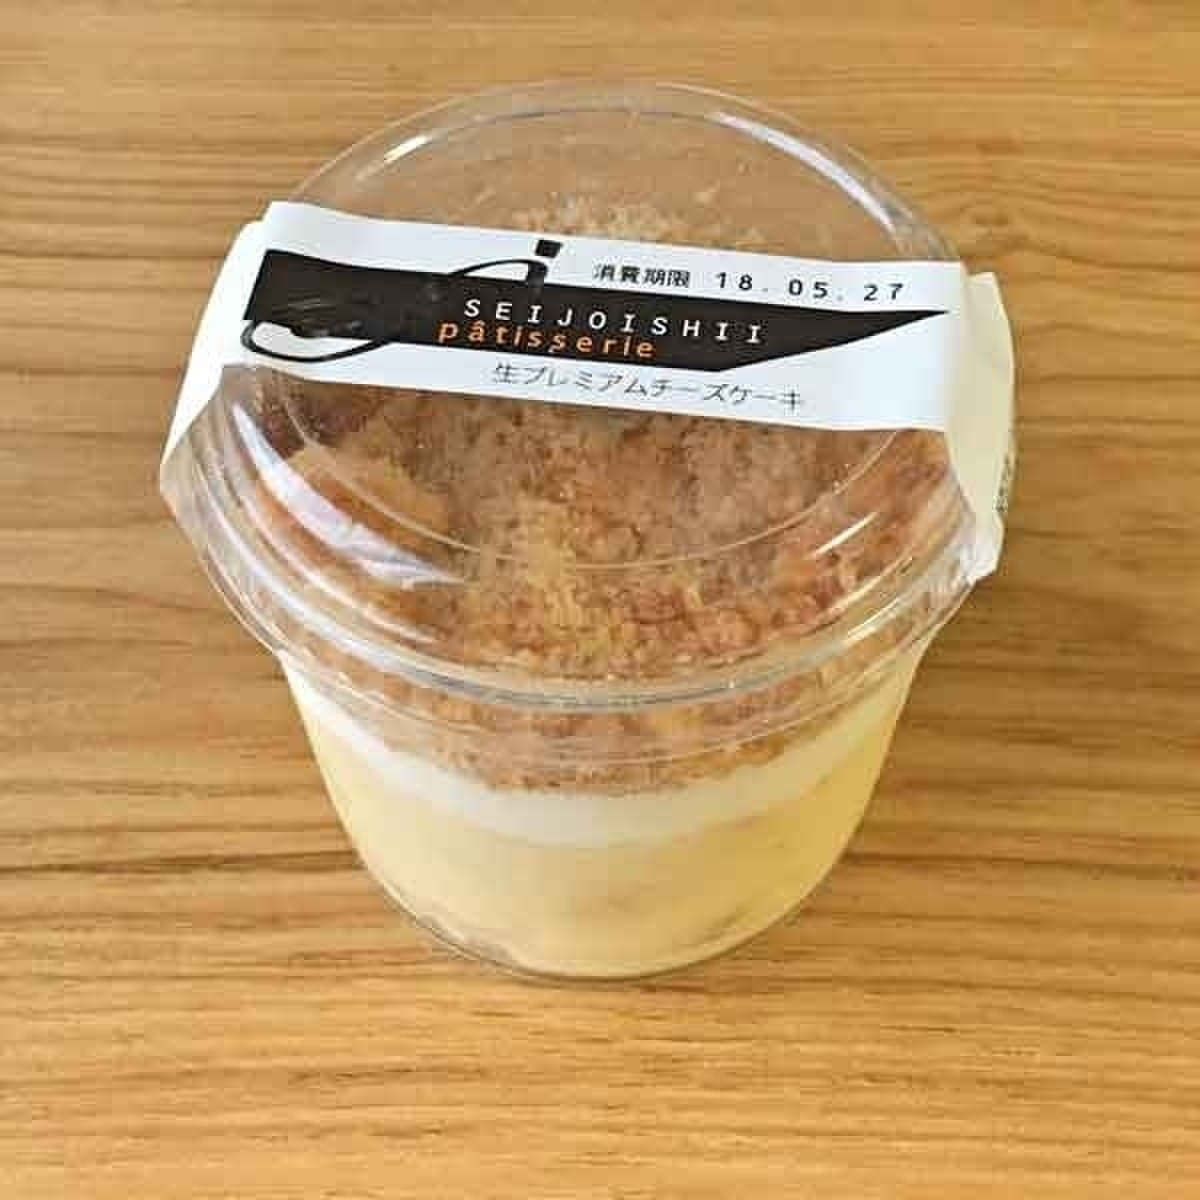 高評価 成城石井 生プレミアムチーズケーキ カップ1個のクチコミ 評価 商品情報 もぐナビ